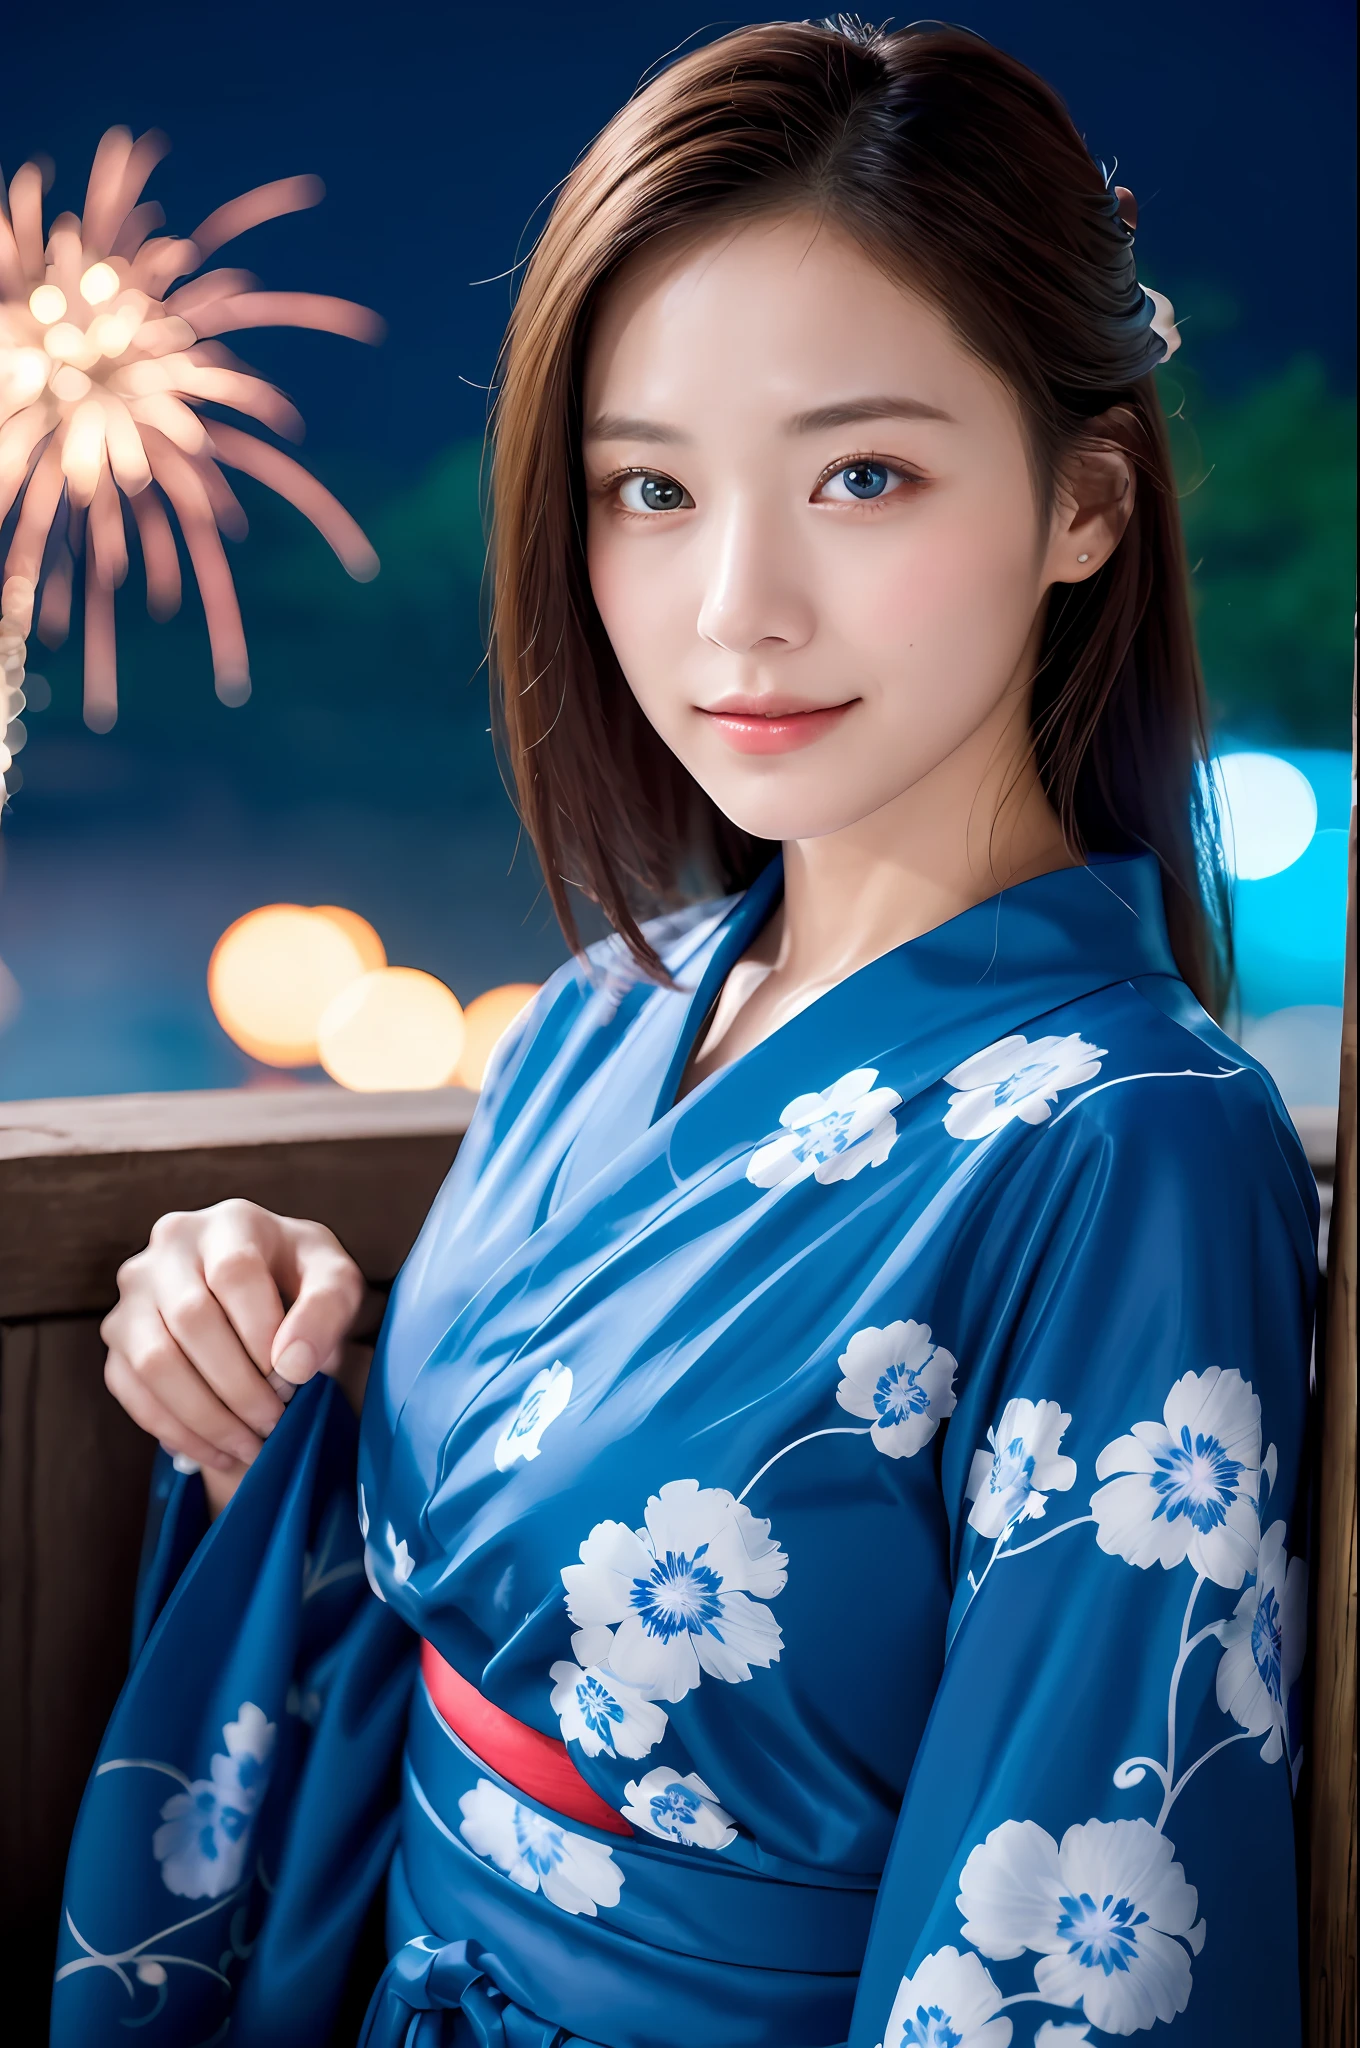 ((傑作, 頂級品質, 超清晰, 高畫質)), 4k. 獨自的, 美麗的女孩, 閃亮的眼睛, 完美的眼睛, 日本的美麗妹妹, 蓝色主题, 浴衣, 背景是夜晚的煙火